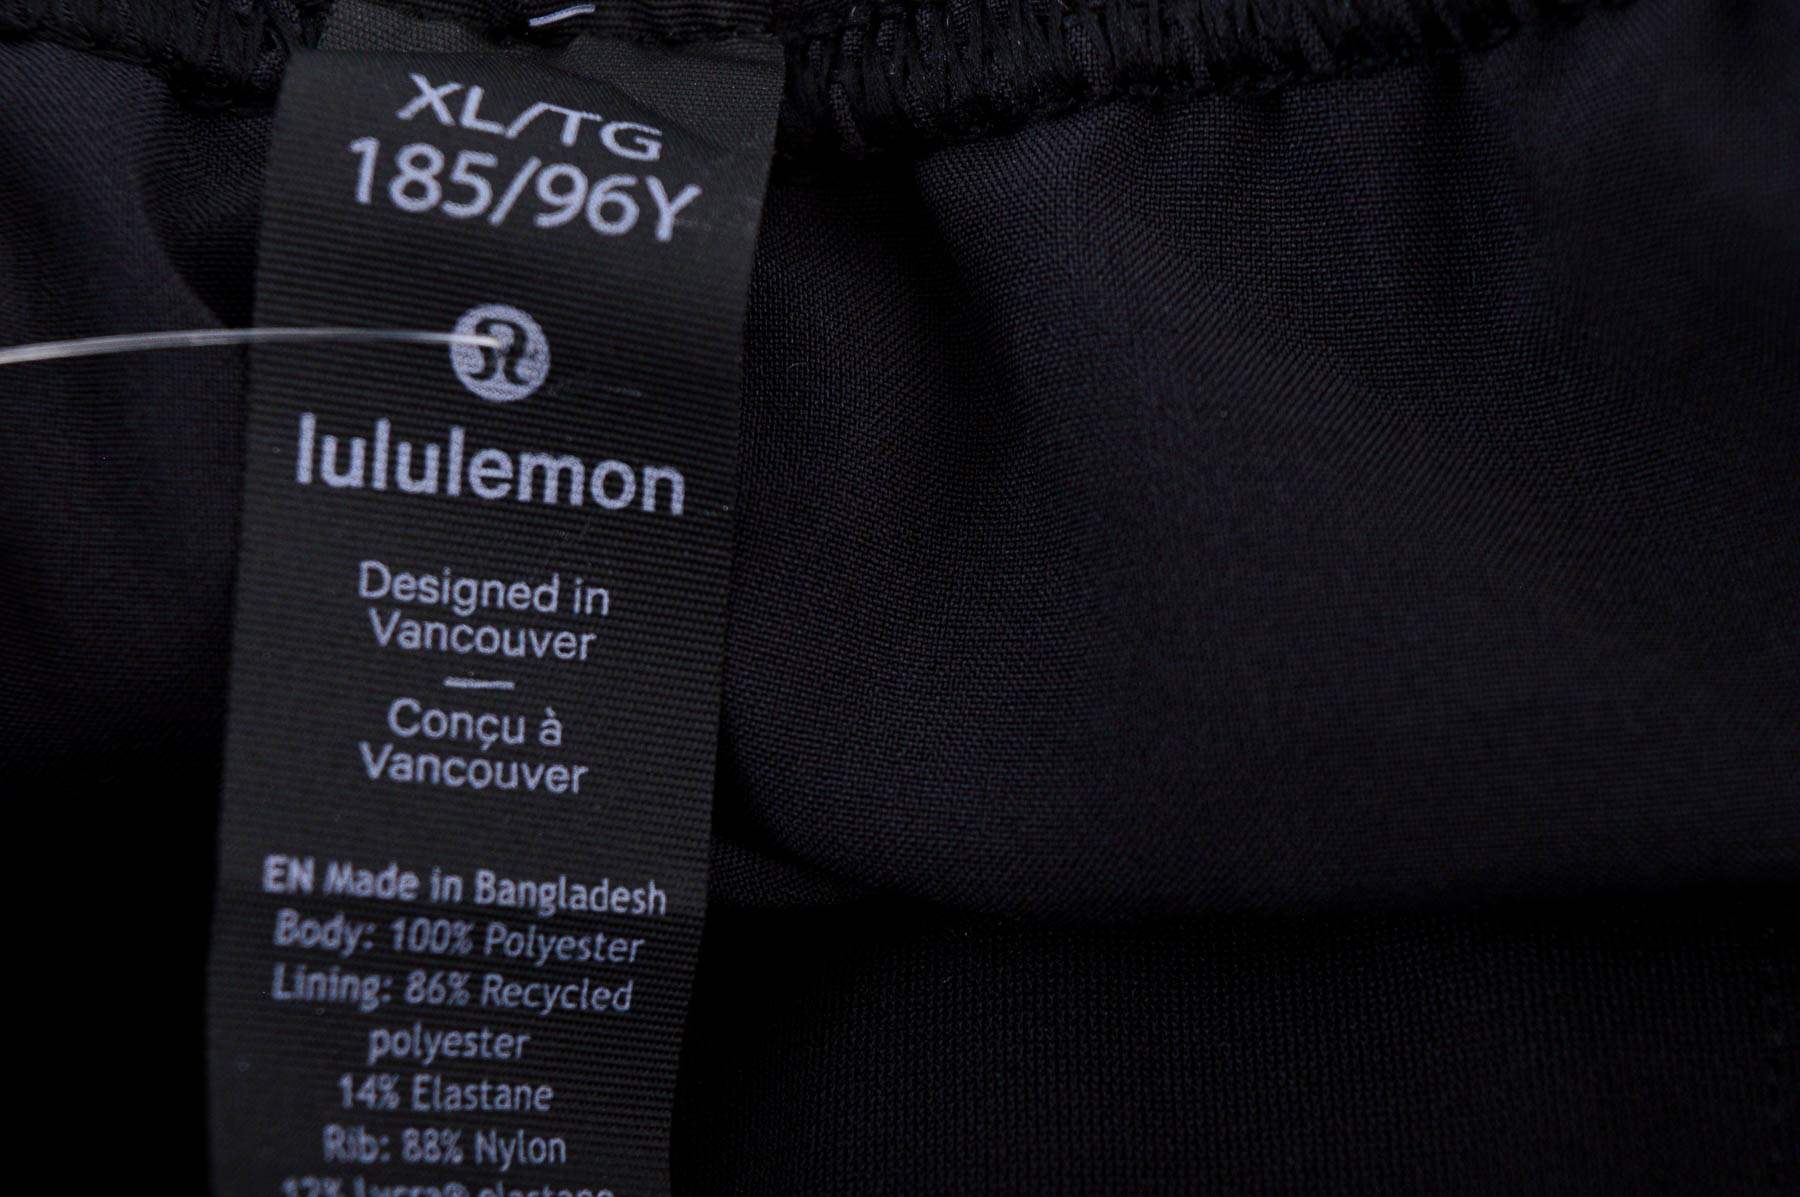 Men's trousers - lululemon - 2